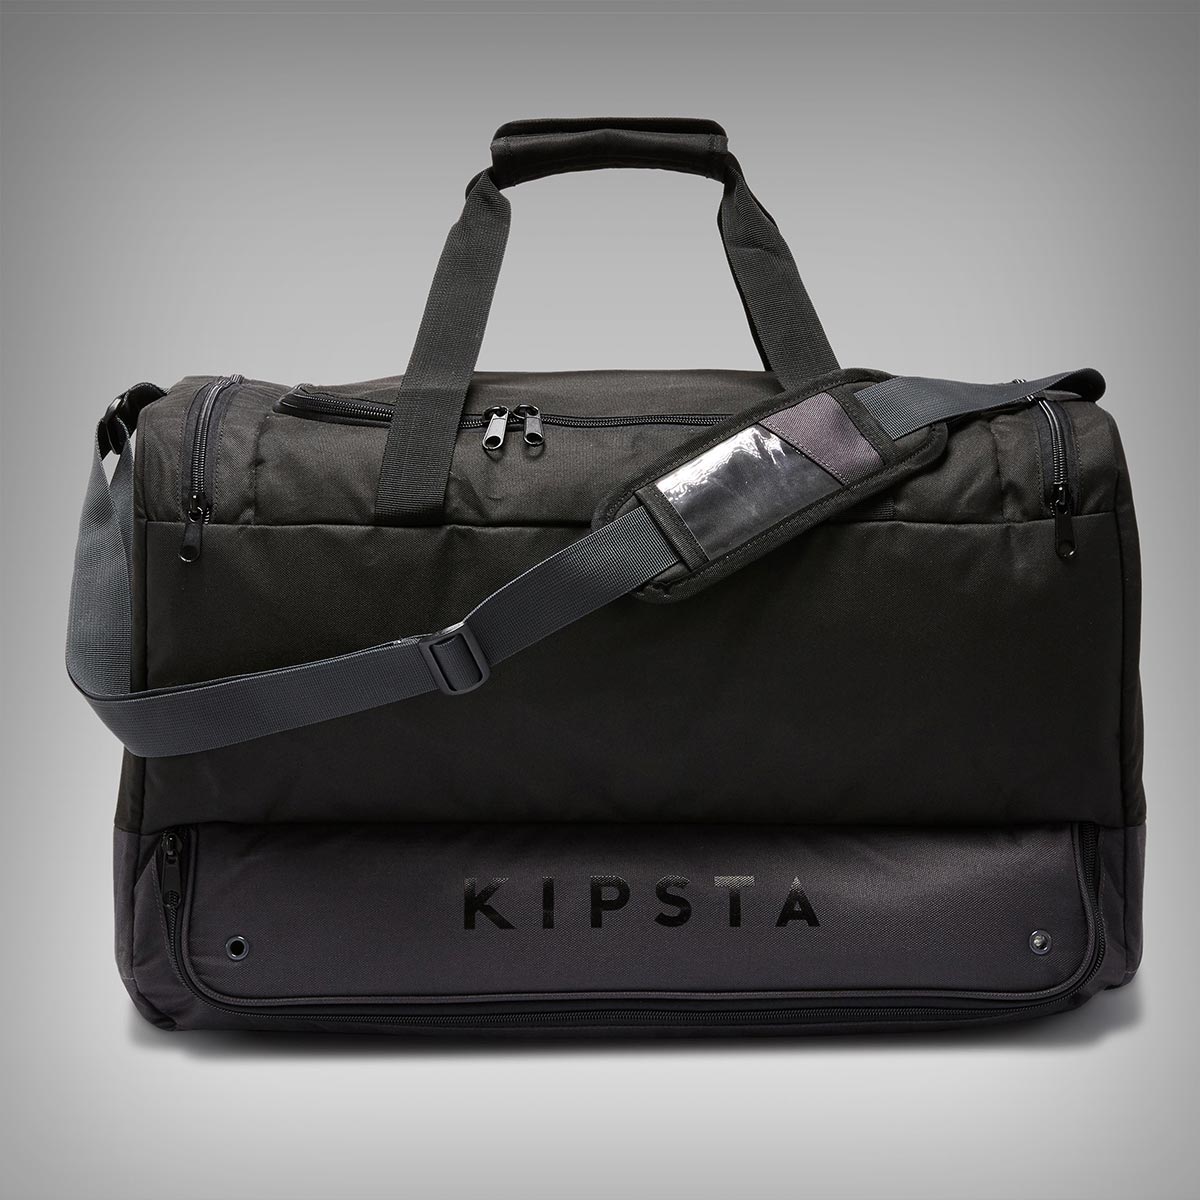 Kipsta Hardcase 75L, una mochila de 30 euros perfecta para llevar toda la equipación ciclista, incluyendo zapatillas